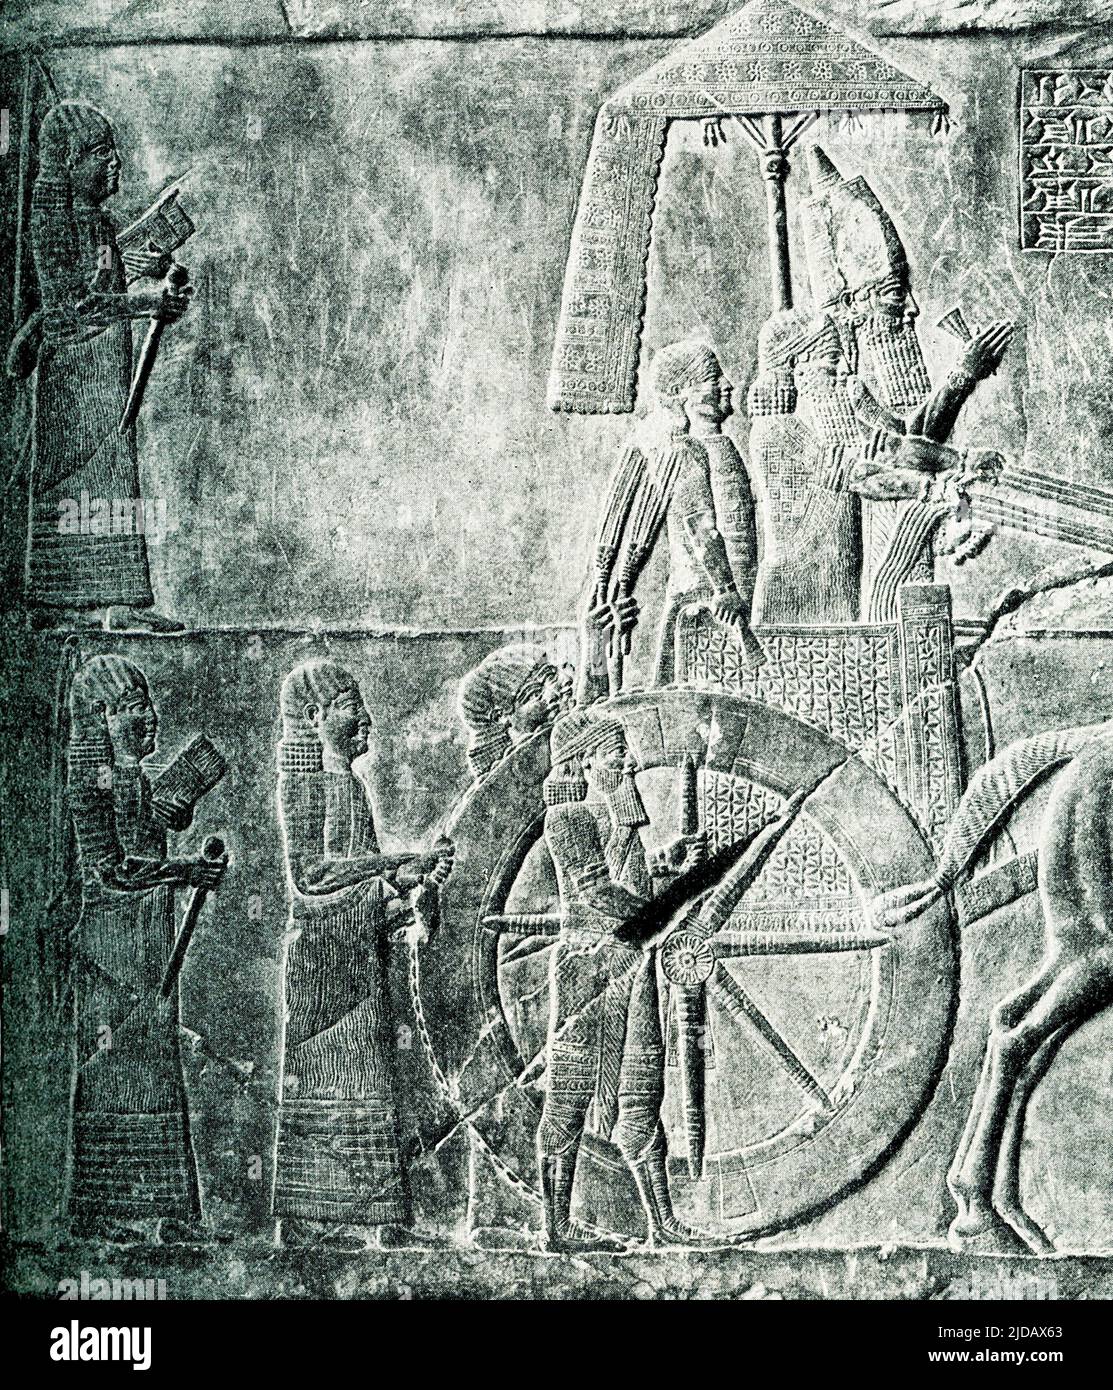 Dieses Bild aus dem Jahr 1910 zeigt den Herrscher Aschurbanipal von Assyrien auf seinem Wagen. Das Original befindet sich im Louvre Museum in Paris. Dieses Bild aus dem Jahr 1910 zeigt Assurbanipal (auch Aschurbanipal geschrieben) auf seinem Wagen. Ashurbanipal war von 669 v. Chr. bis zu seinem Tod im Jahr 631 König des neo-assyrischen Reiches. Er ist in der Regel in Erinnerung als der letzte große König von Assyrien. Die 38-jährige Regierungszeit von Ashurbanipal, die den Thron als bevorzugter Erbe seines Vaters Esarhaddon erbte, gehörte zu den längsten aller assyrischen Könige. Stockfoto